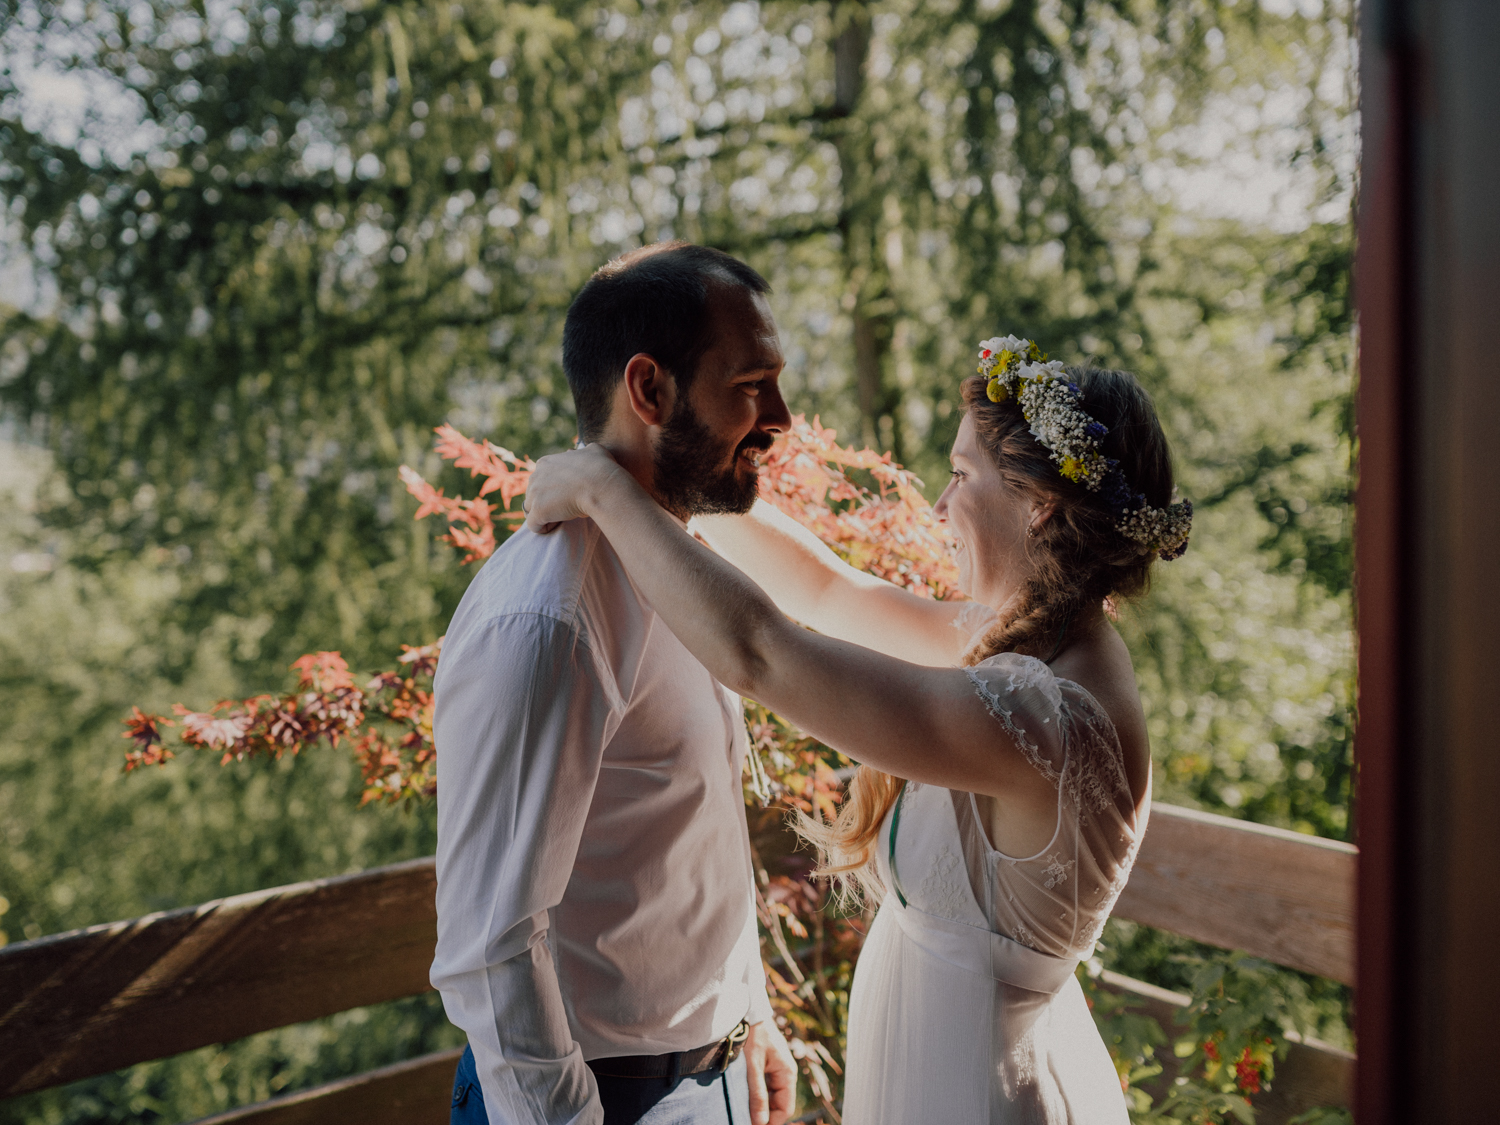 capyture-wedding-photographer-destination-elopement-switzerland-17